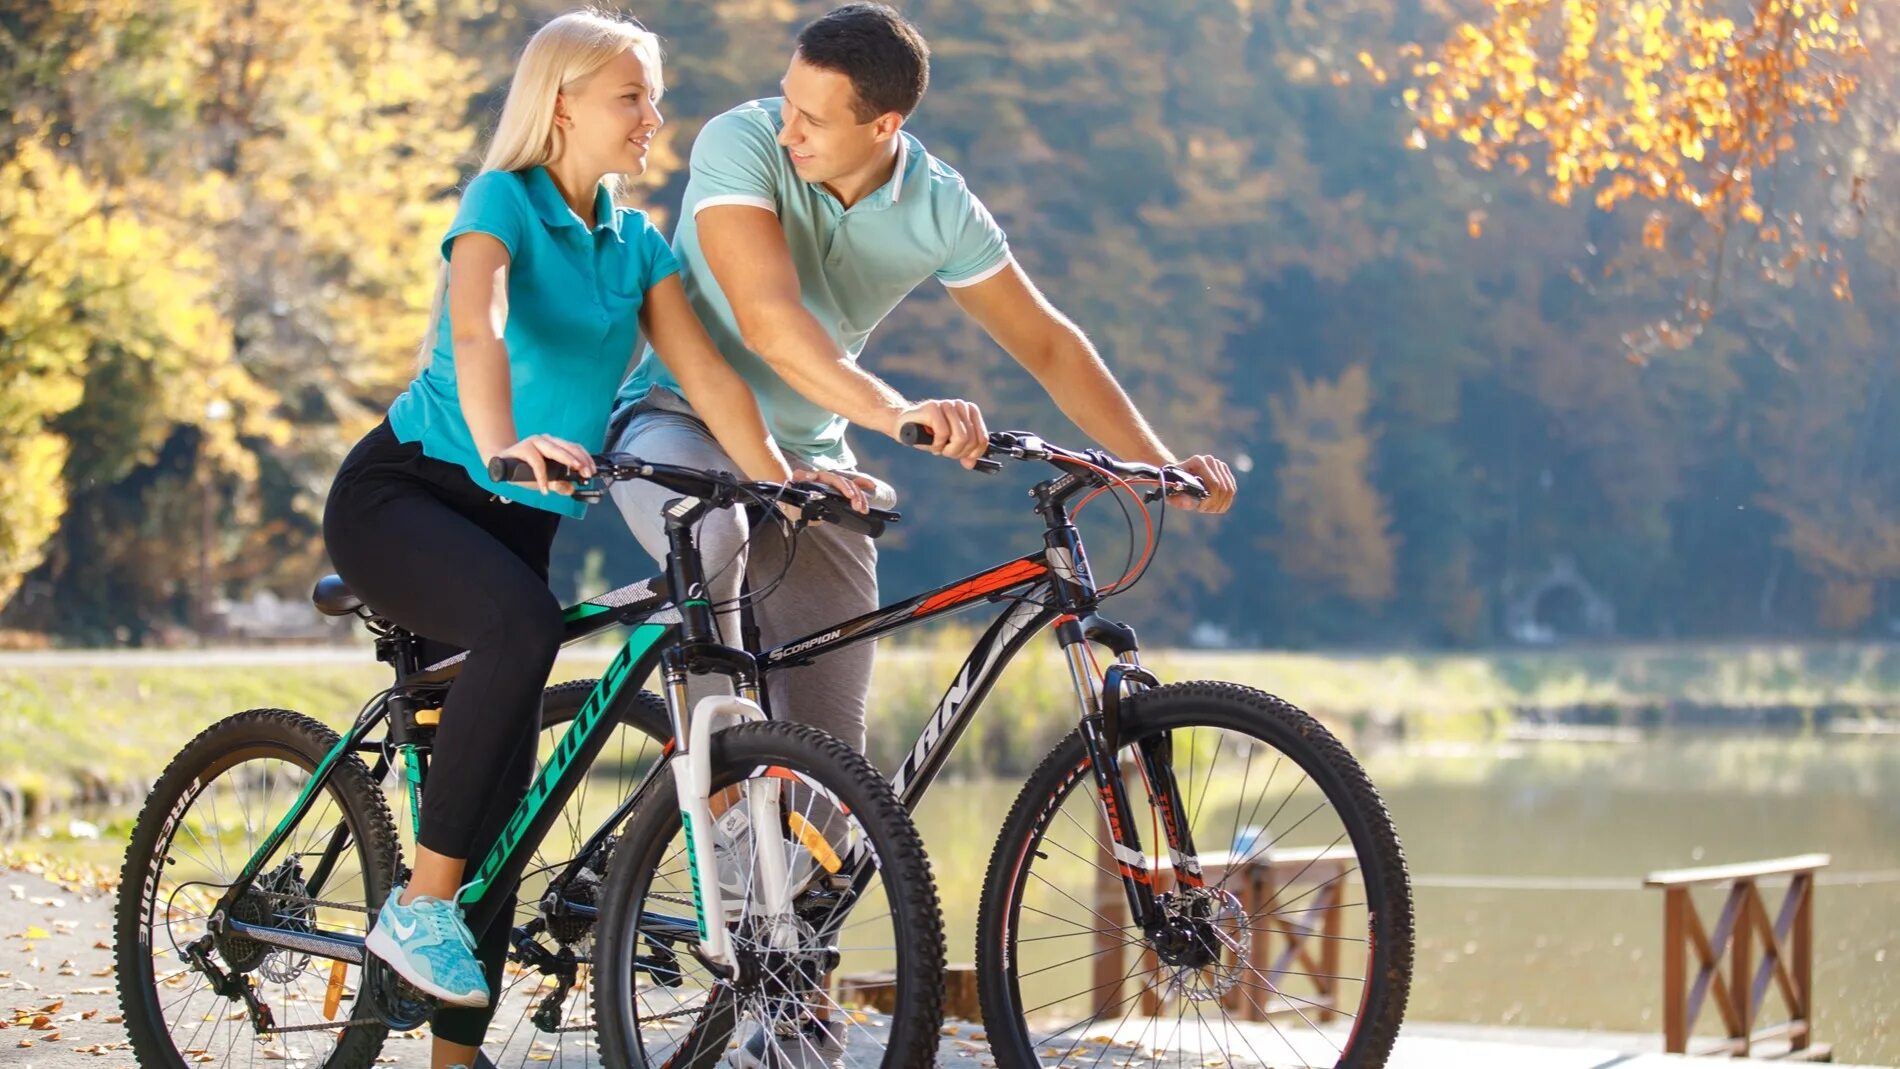 Какой лучше брать велосипед. Прогулка на велосипеде. Семья на велосипедах. Велосипеды для всей семьи. Велосипедисты на прогулке.